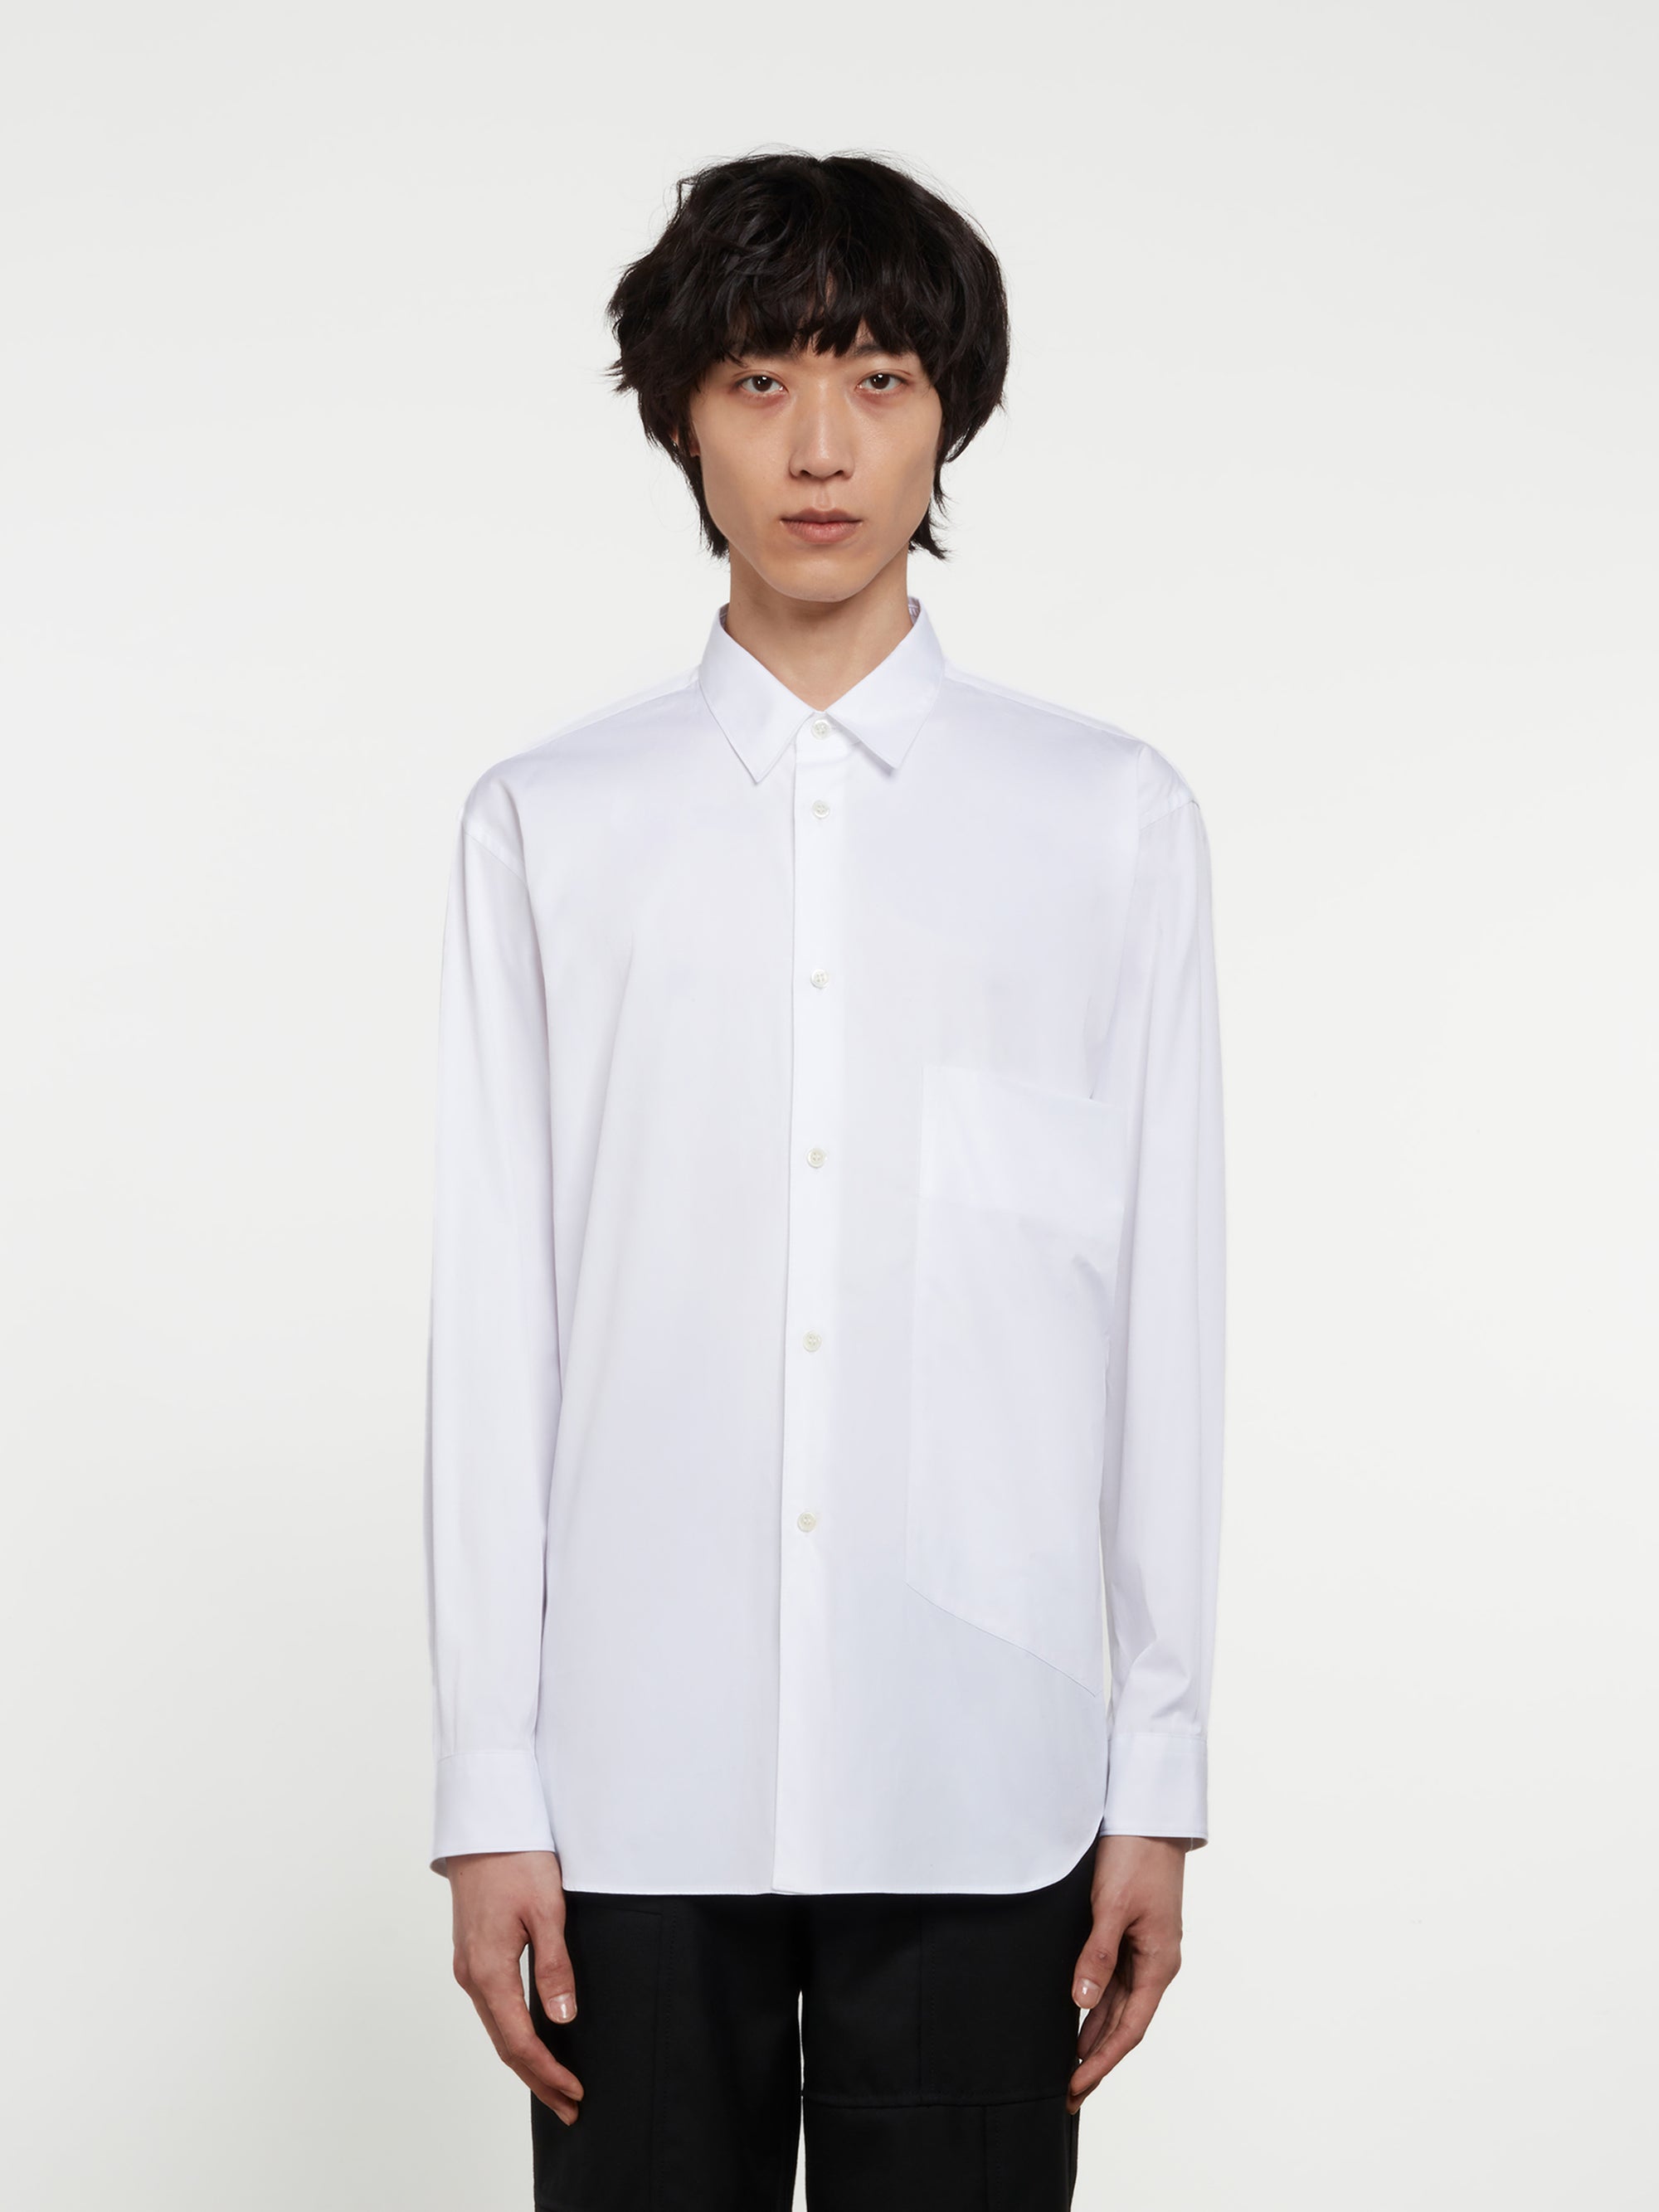 CDG Shirt - Men's Oversized Pocket Shirt - (White) view 1